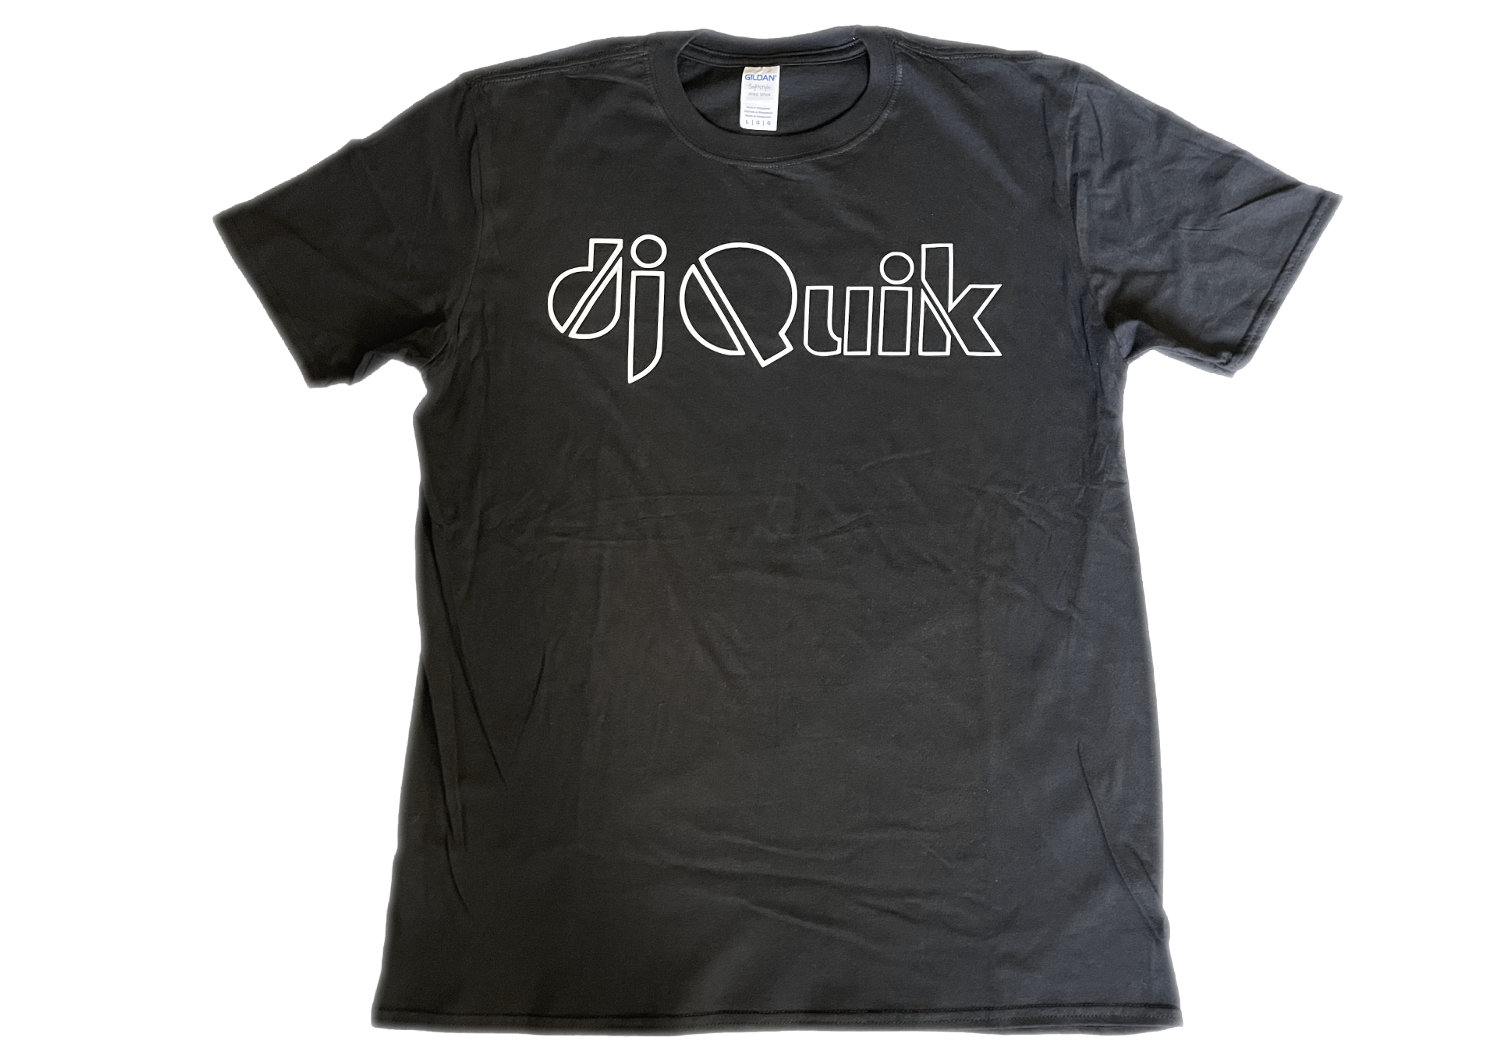 Discover DJ Quik LA Compton 90's west coast rap hip hop music love black culture shirt